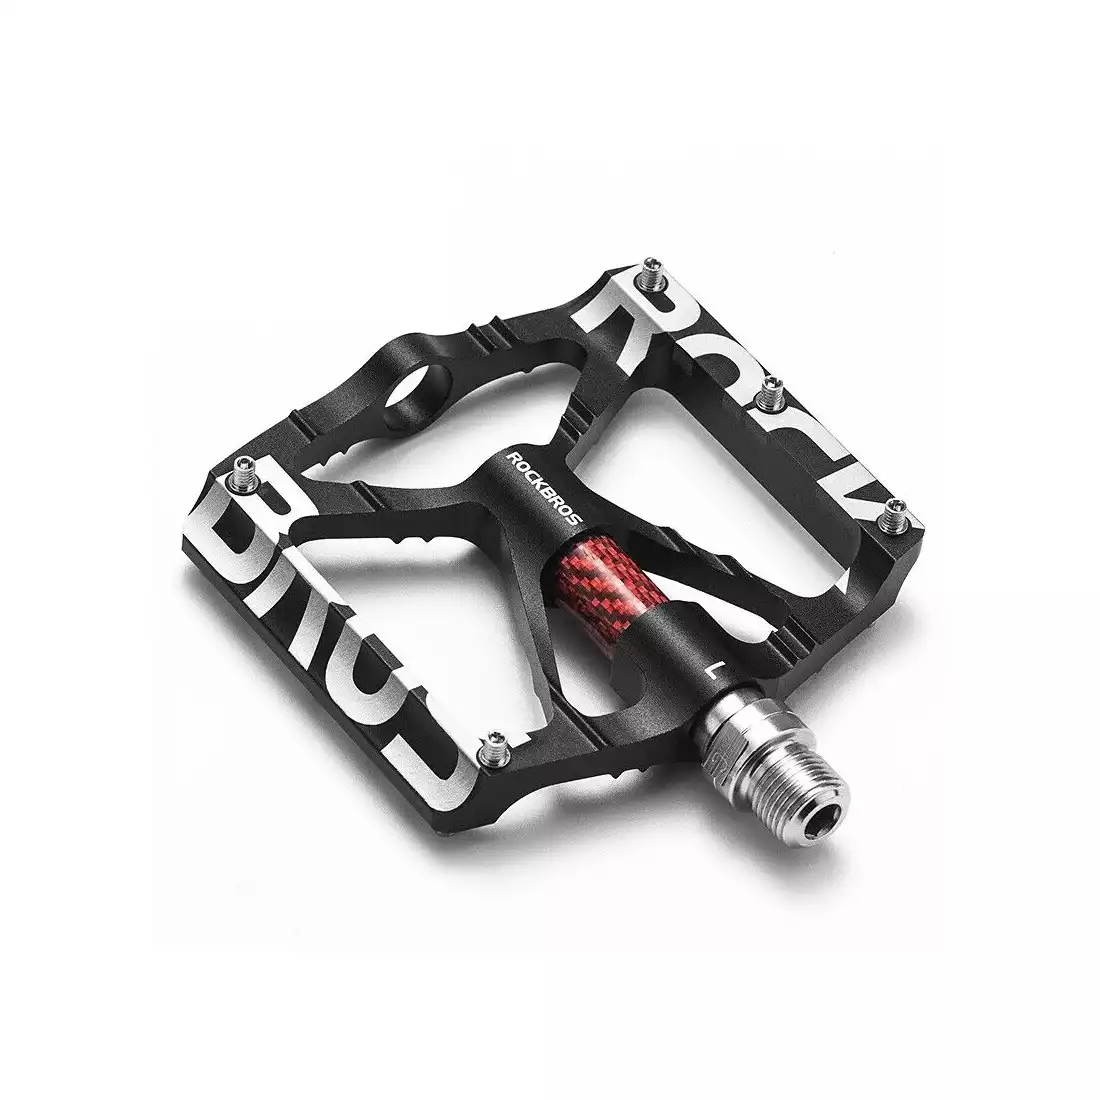 Rockbros aluminium platform pedals, black 37213071001